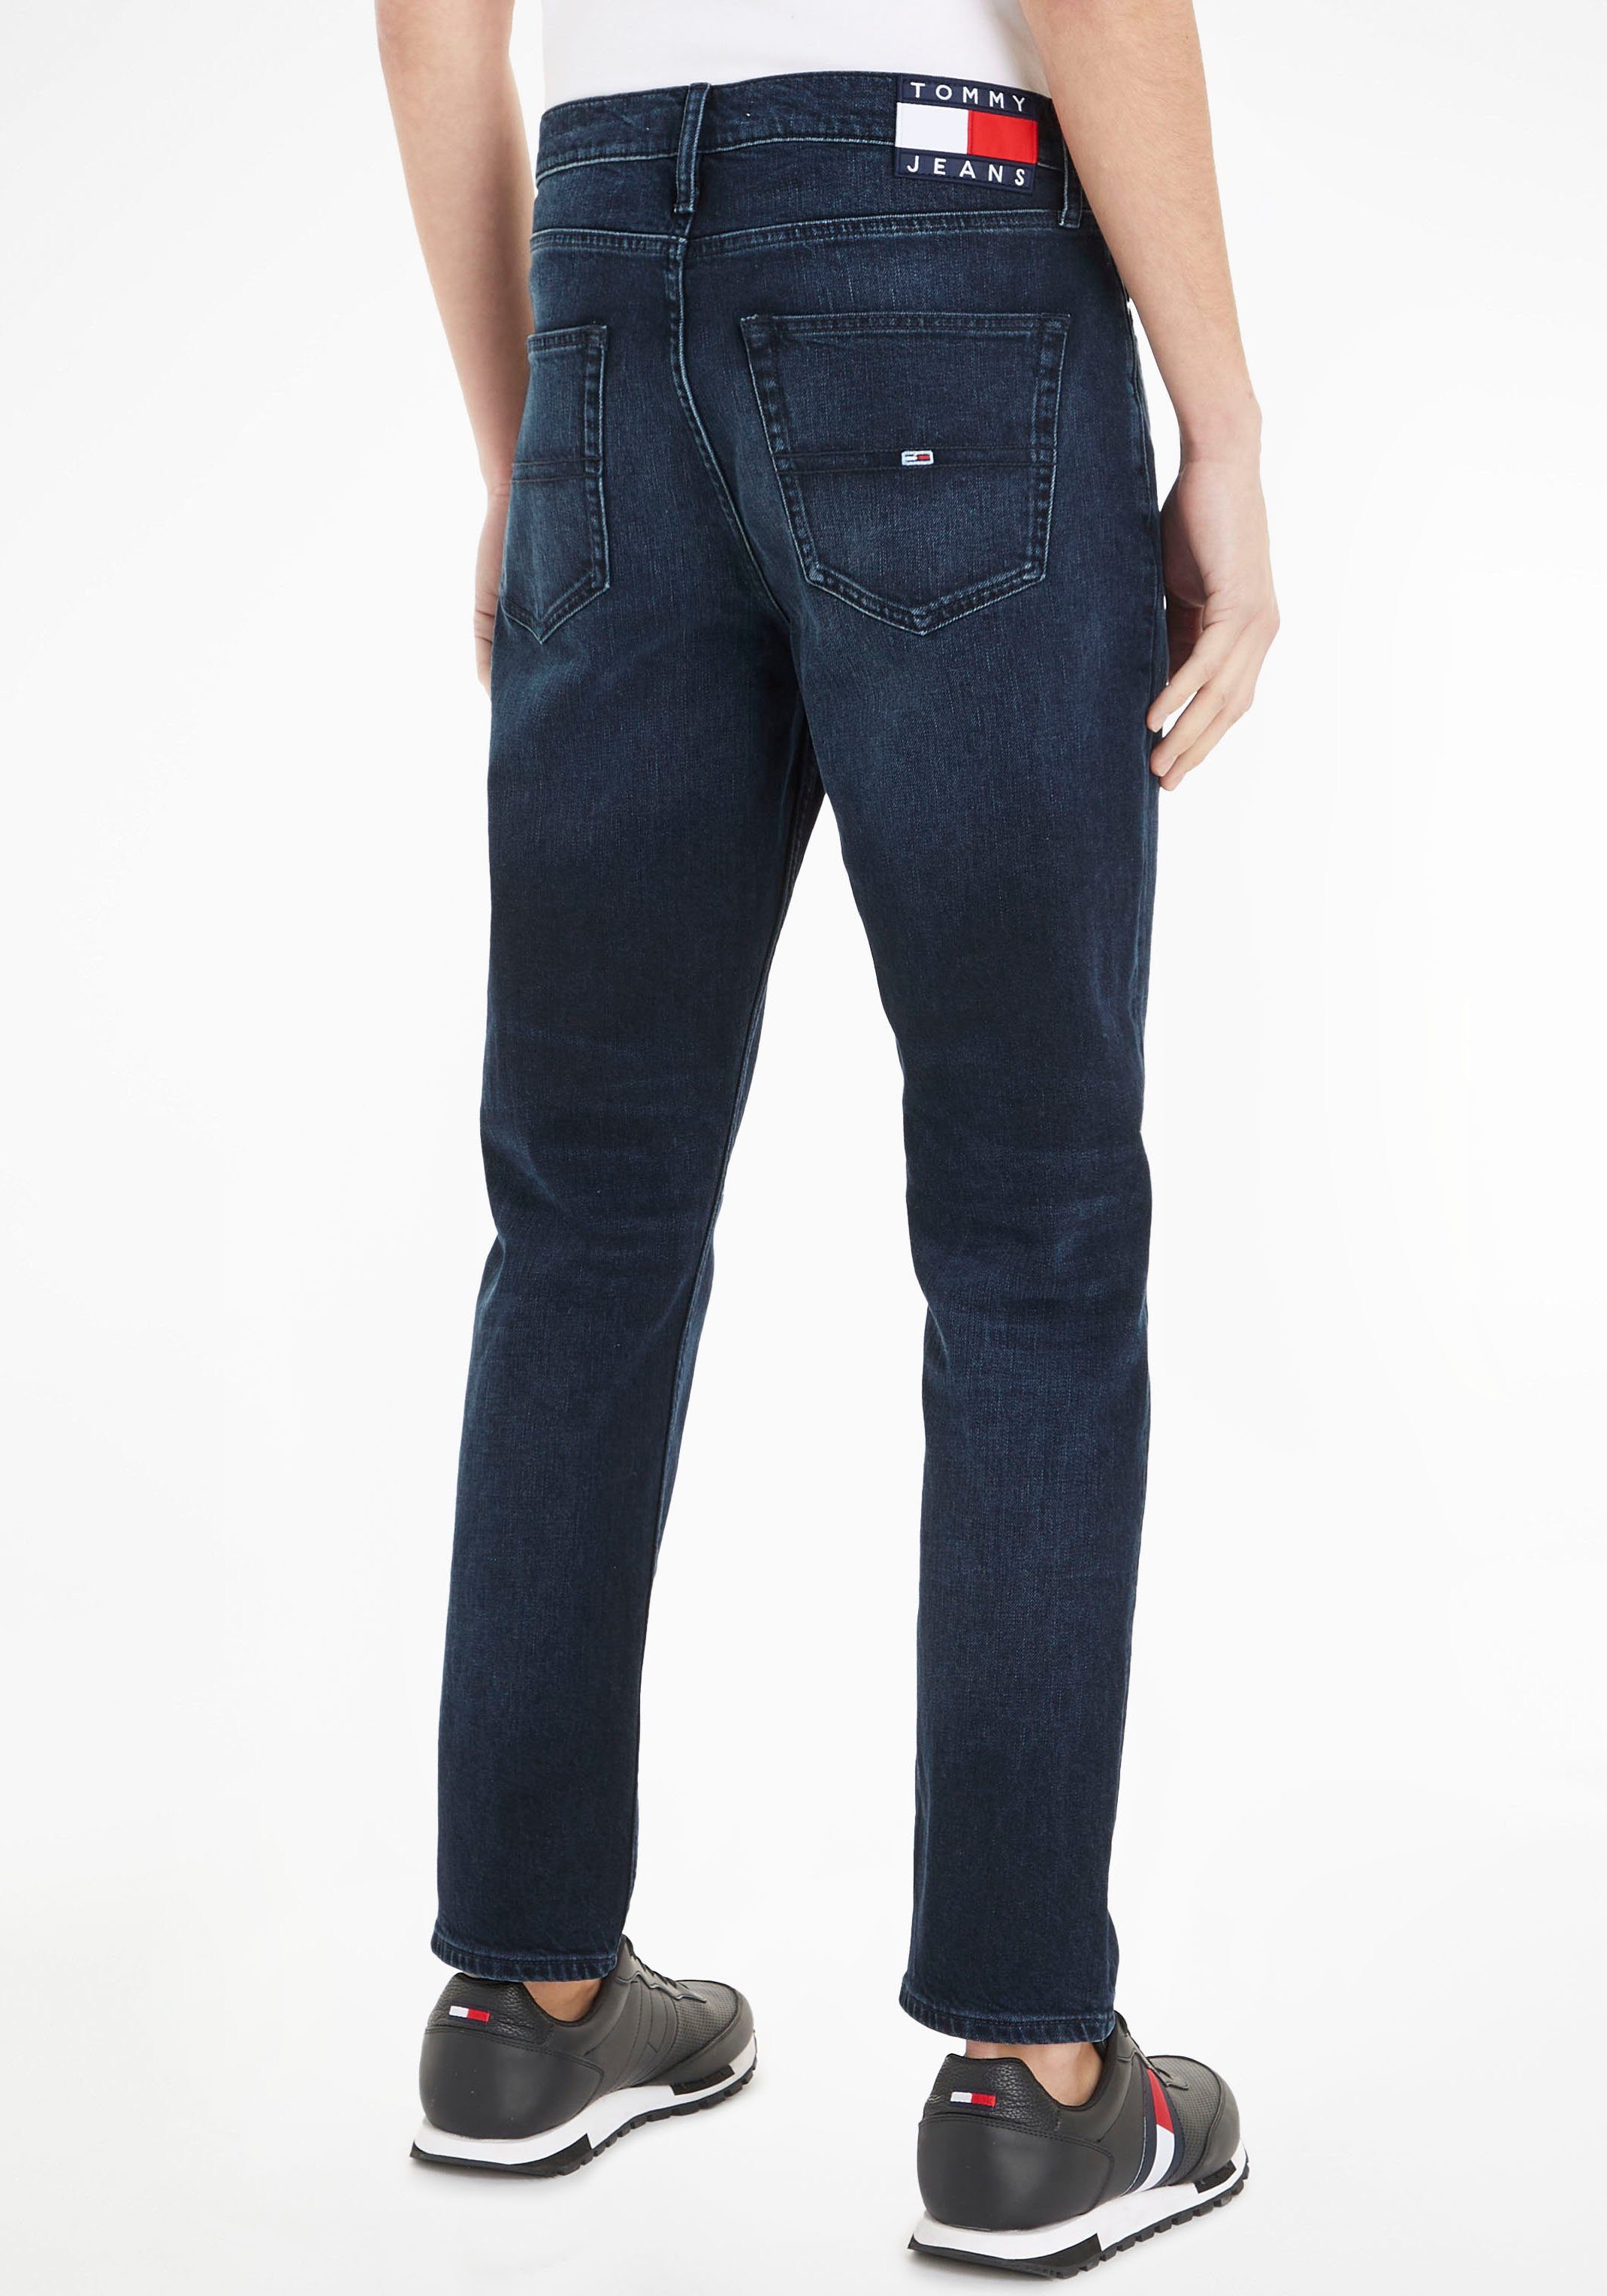 JEAN RGLR Jeans Tommy TPRD 5-Pocket-Jeans dark DAD blue